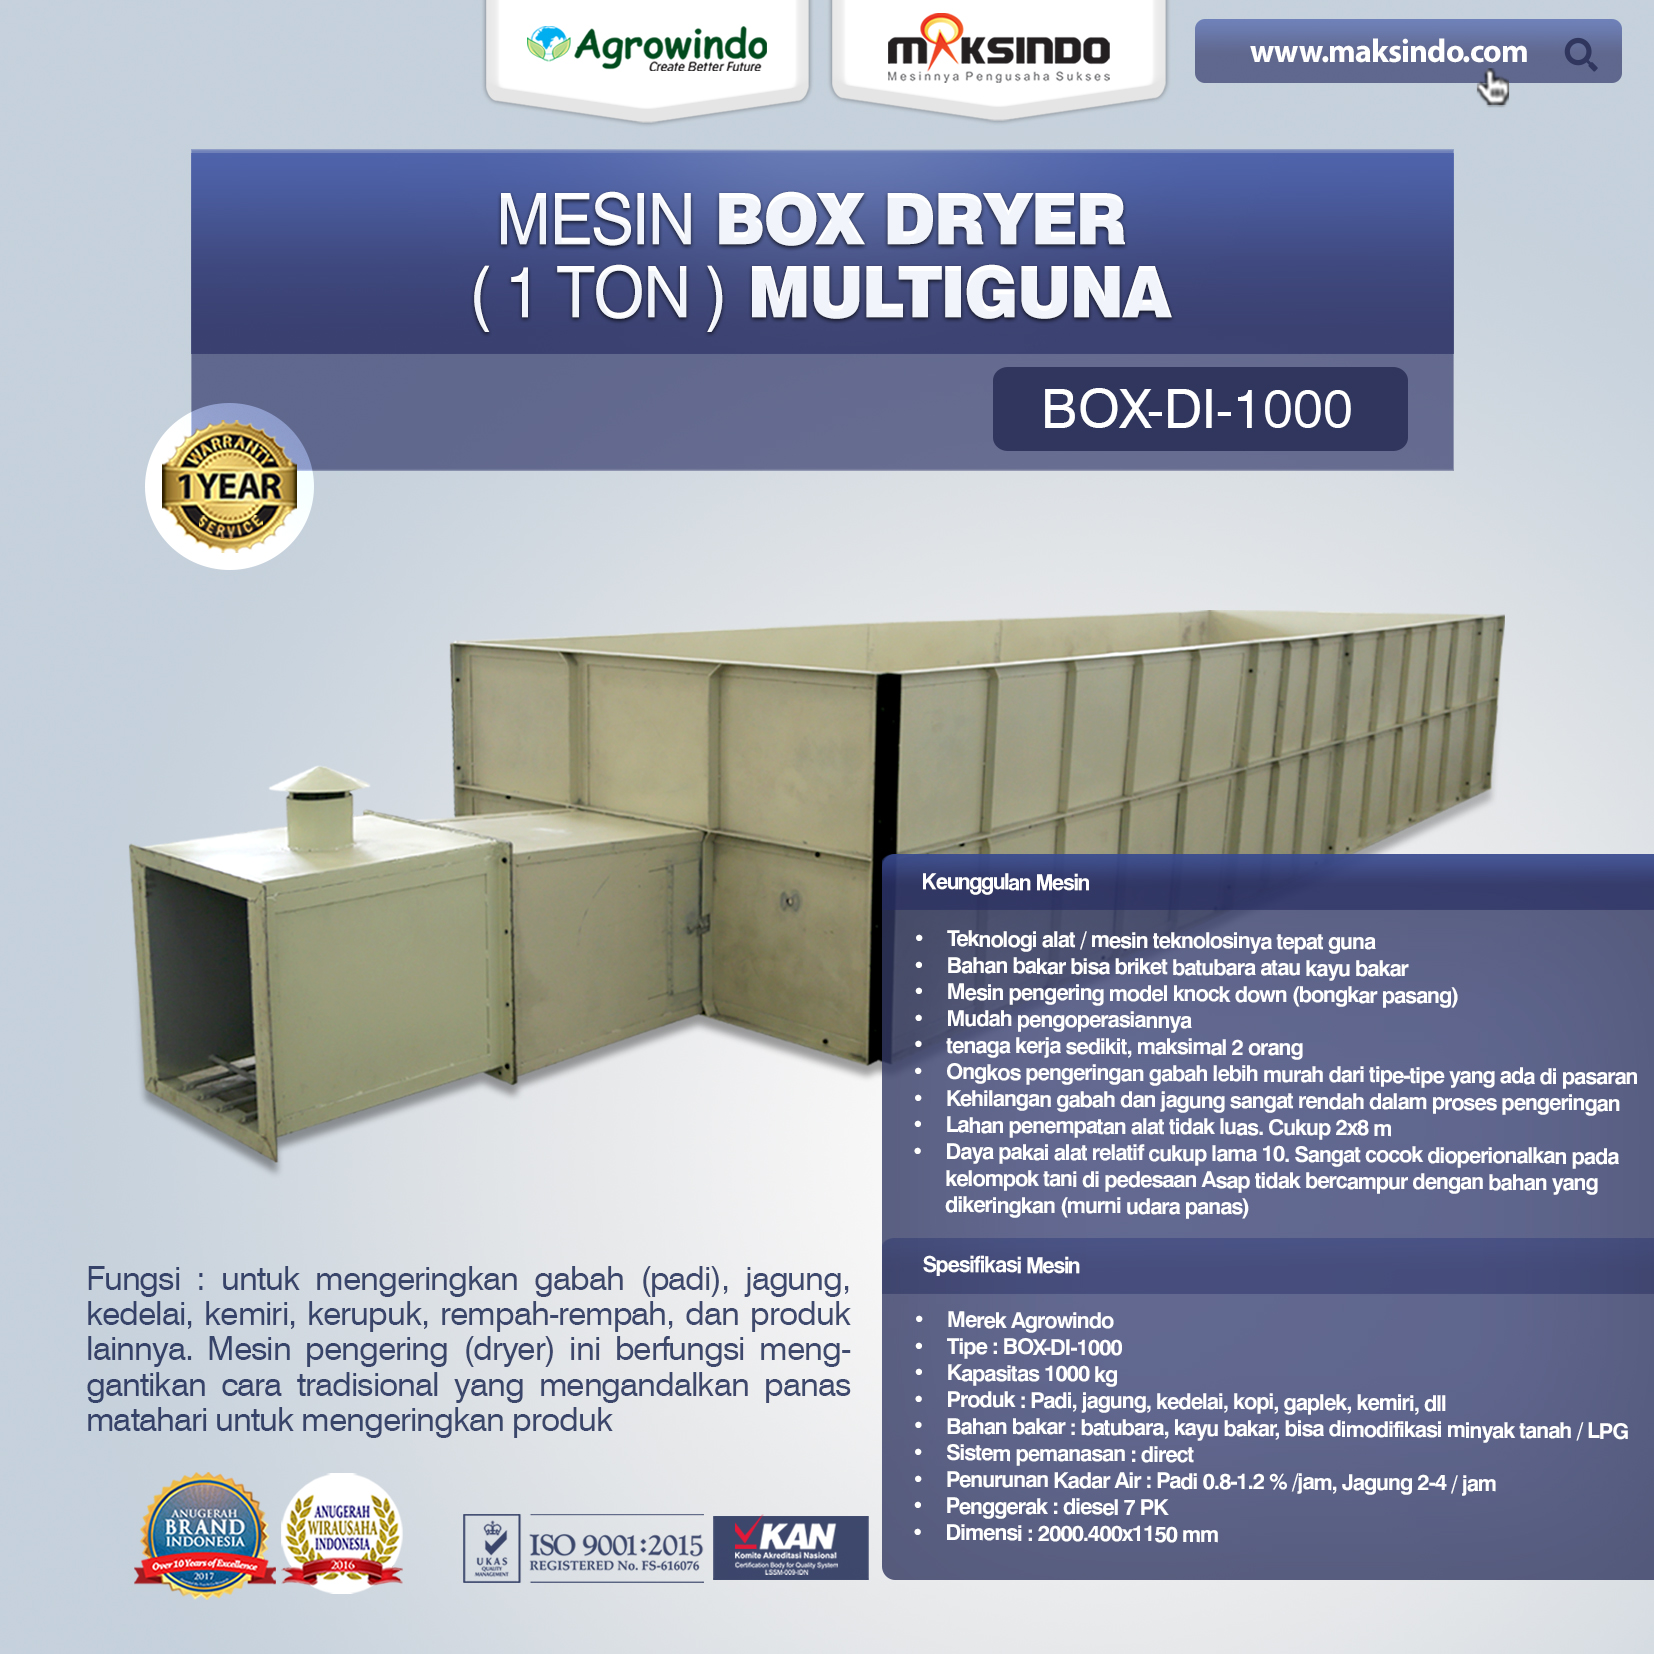 Mesin Box Dryer Direct 1 ton BOX-DI-1000